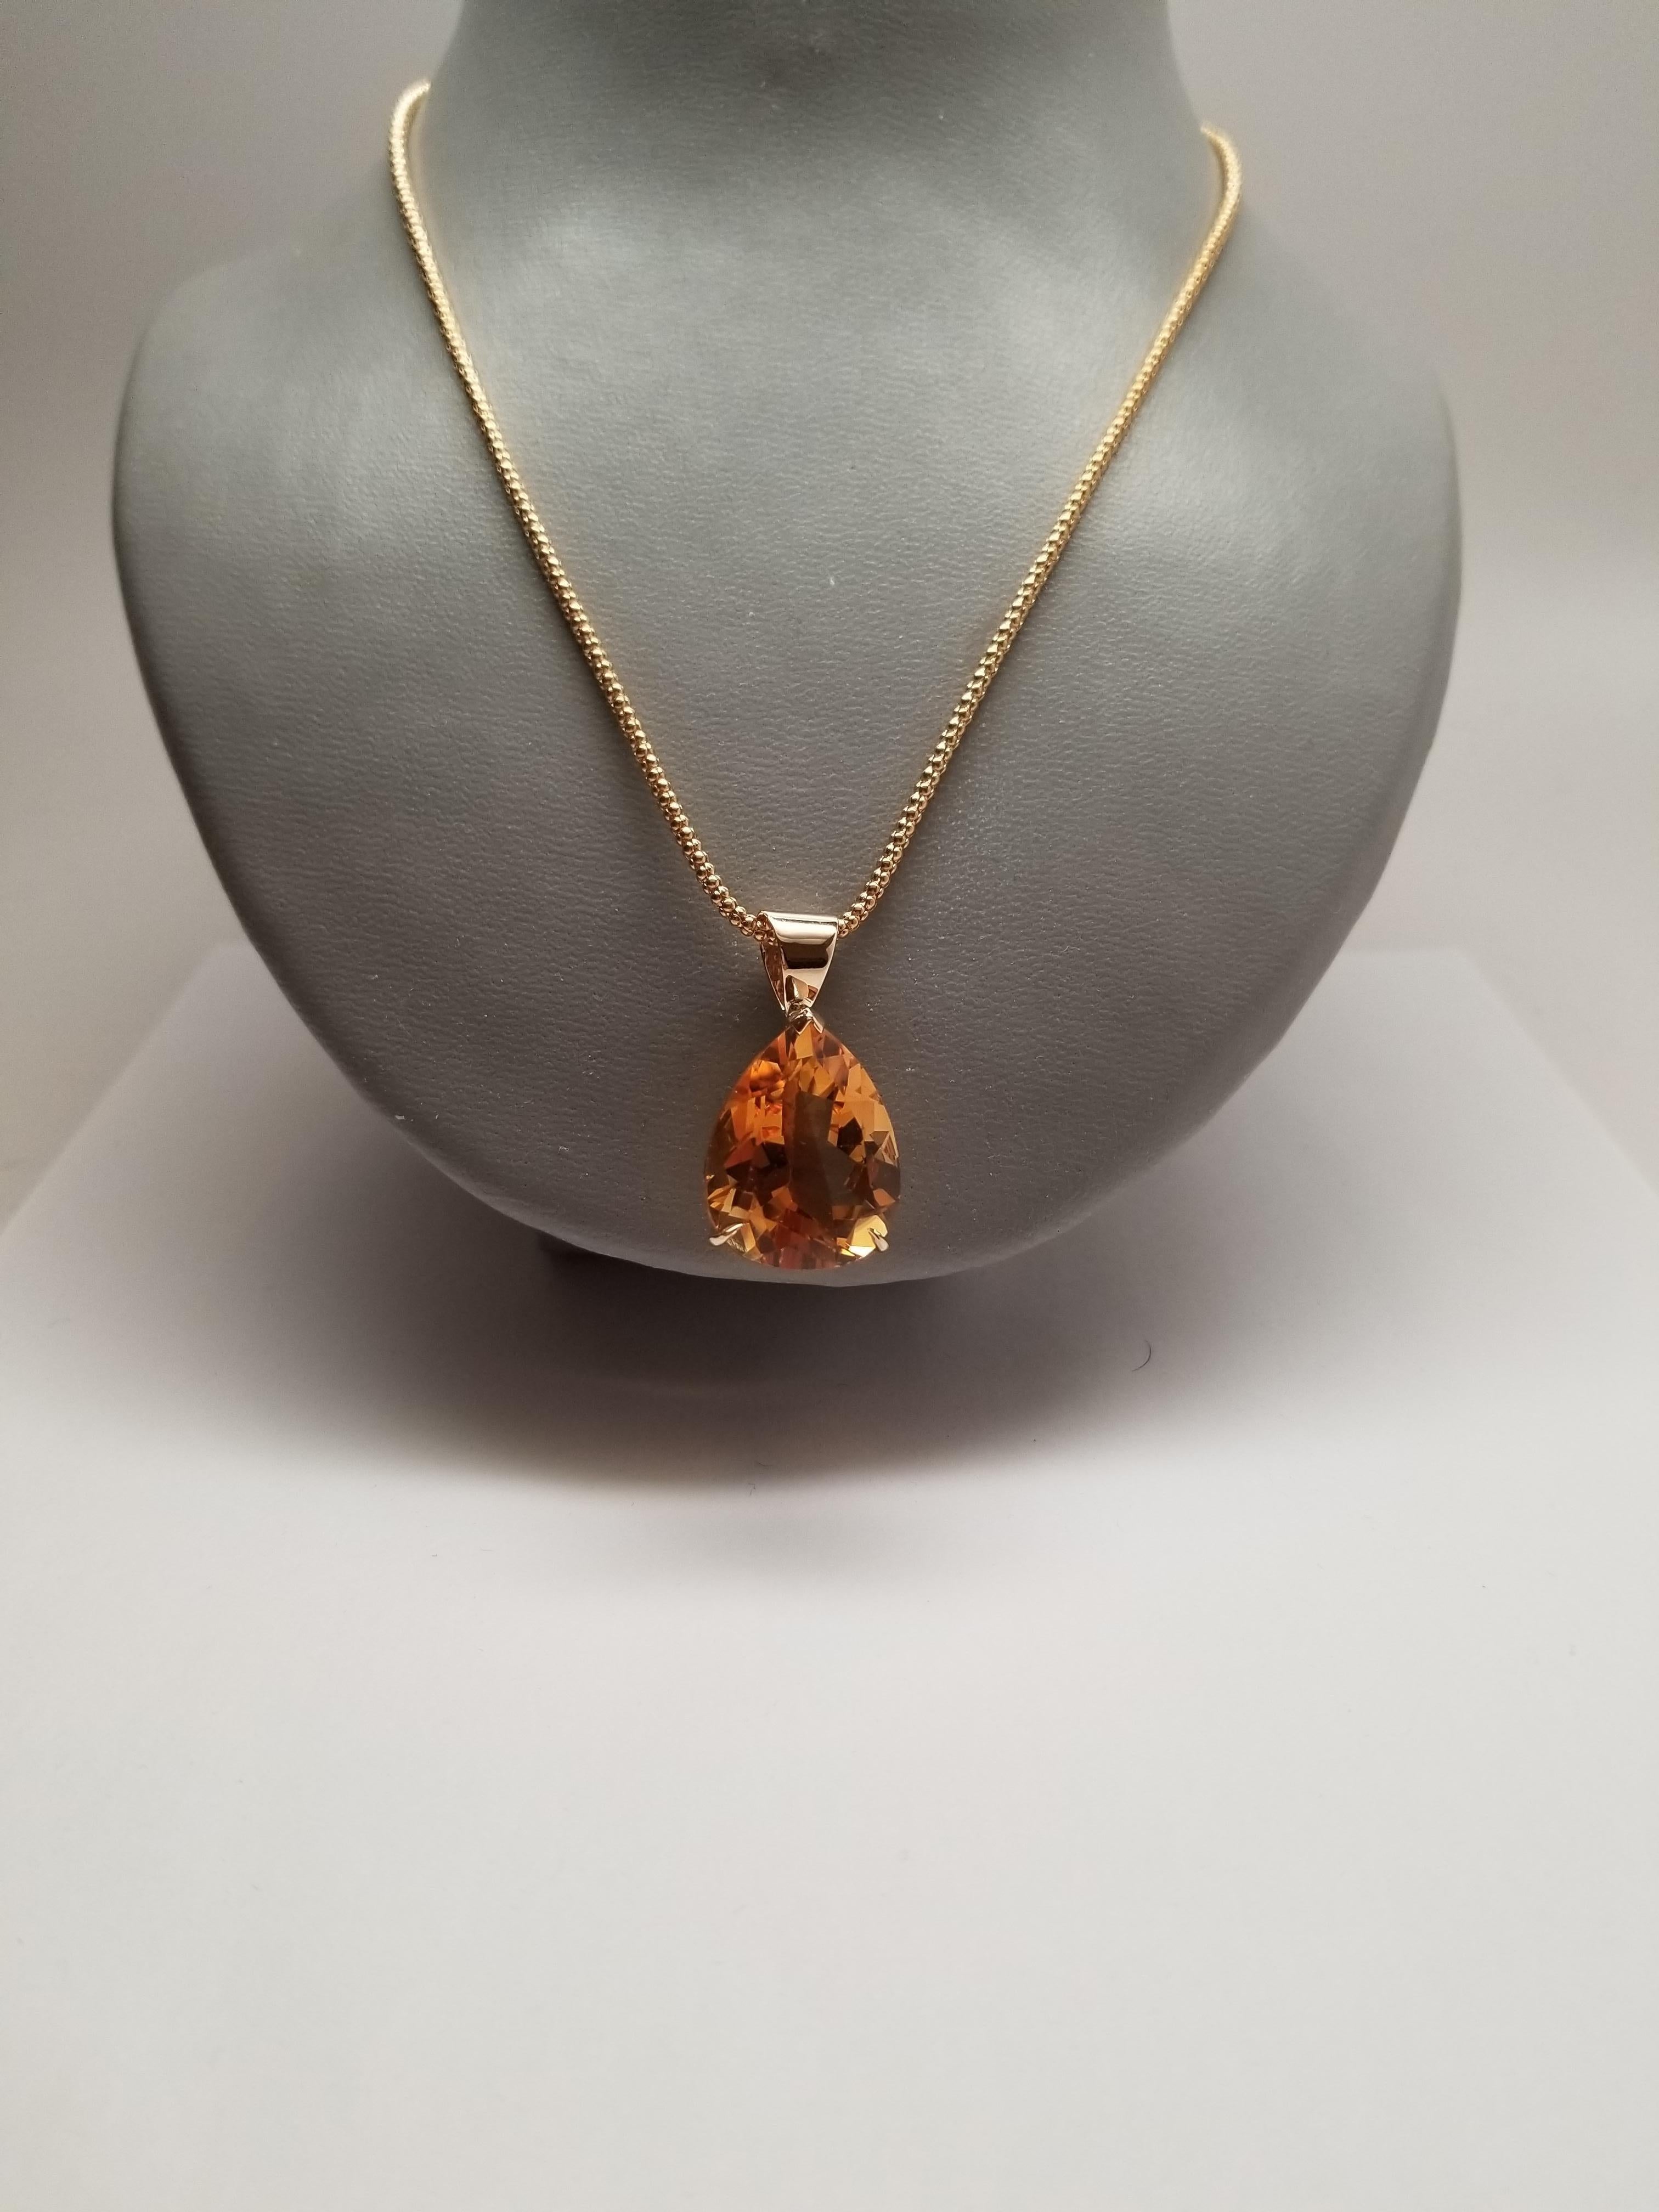 Ajoutez une touche d'élégance à votre collection de bijoux avec ce superbe pendentif en or jaune 14k de LaFrancee, orné d'une pierre de citrine naturelle en forme de poire d'une belle couleur orange mandarine. Le pendentif en forme de goutte d'eau